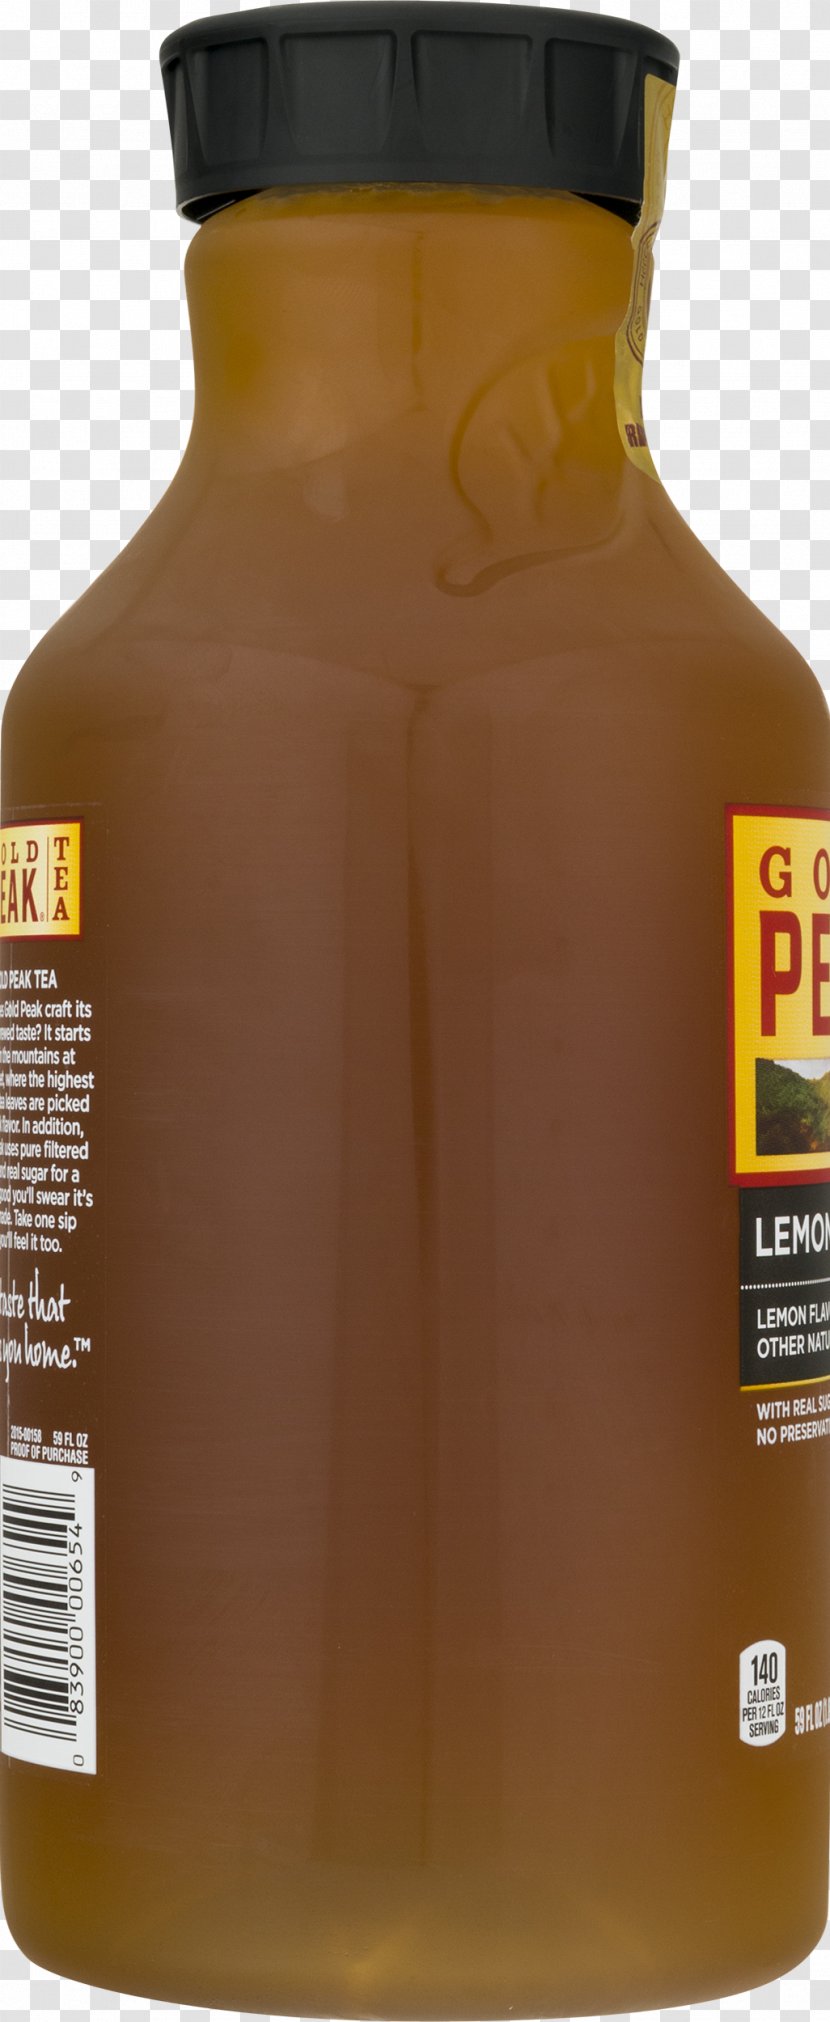 Iced Tea Lemonade Gold Peak Flavor - Salt Transparent PNG